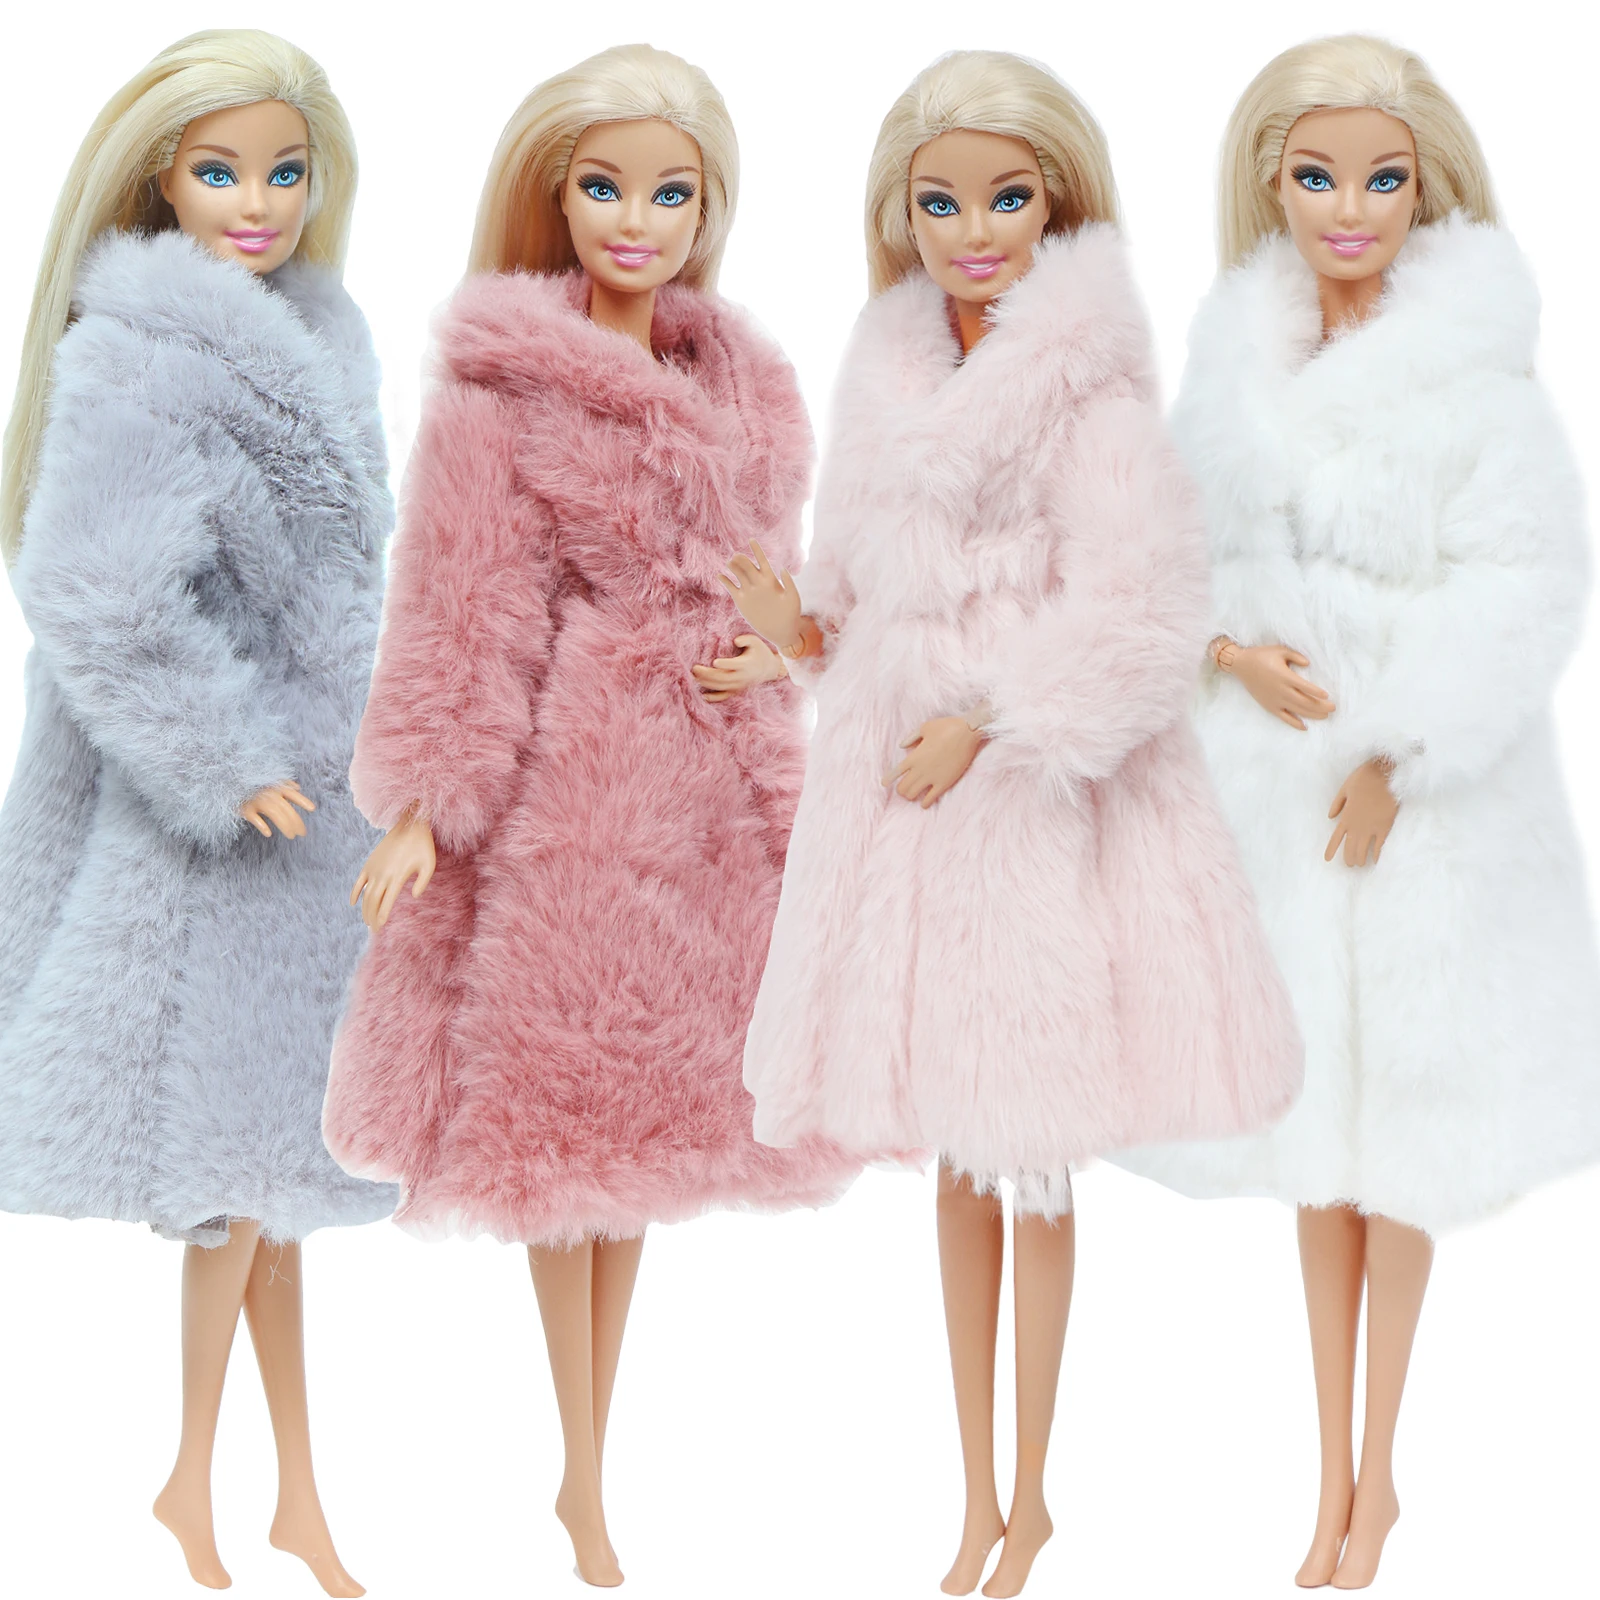 En oferta Multicolor 1 Conjunto de manga larga abrigo de piel suave Tops vestido de invierno Casual Ropa Accesorios ropa para muñeca Barbie niños juguete bVnqeVYAx